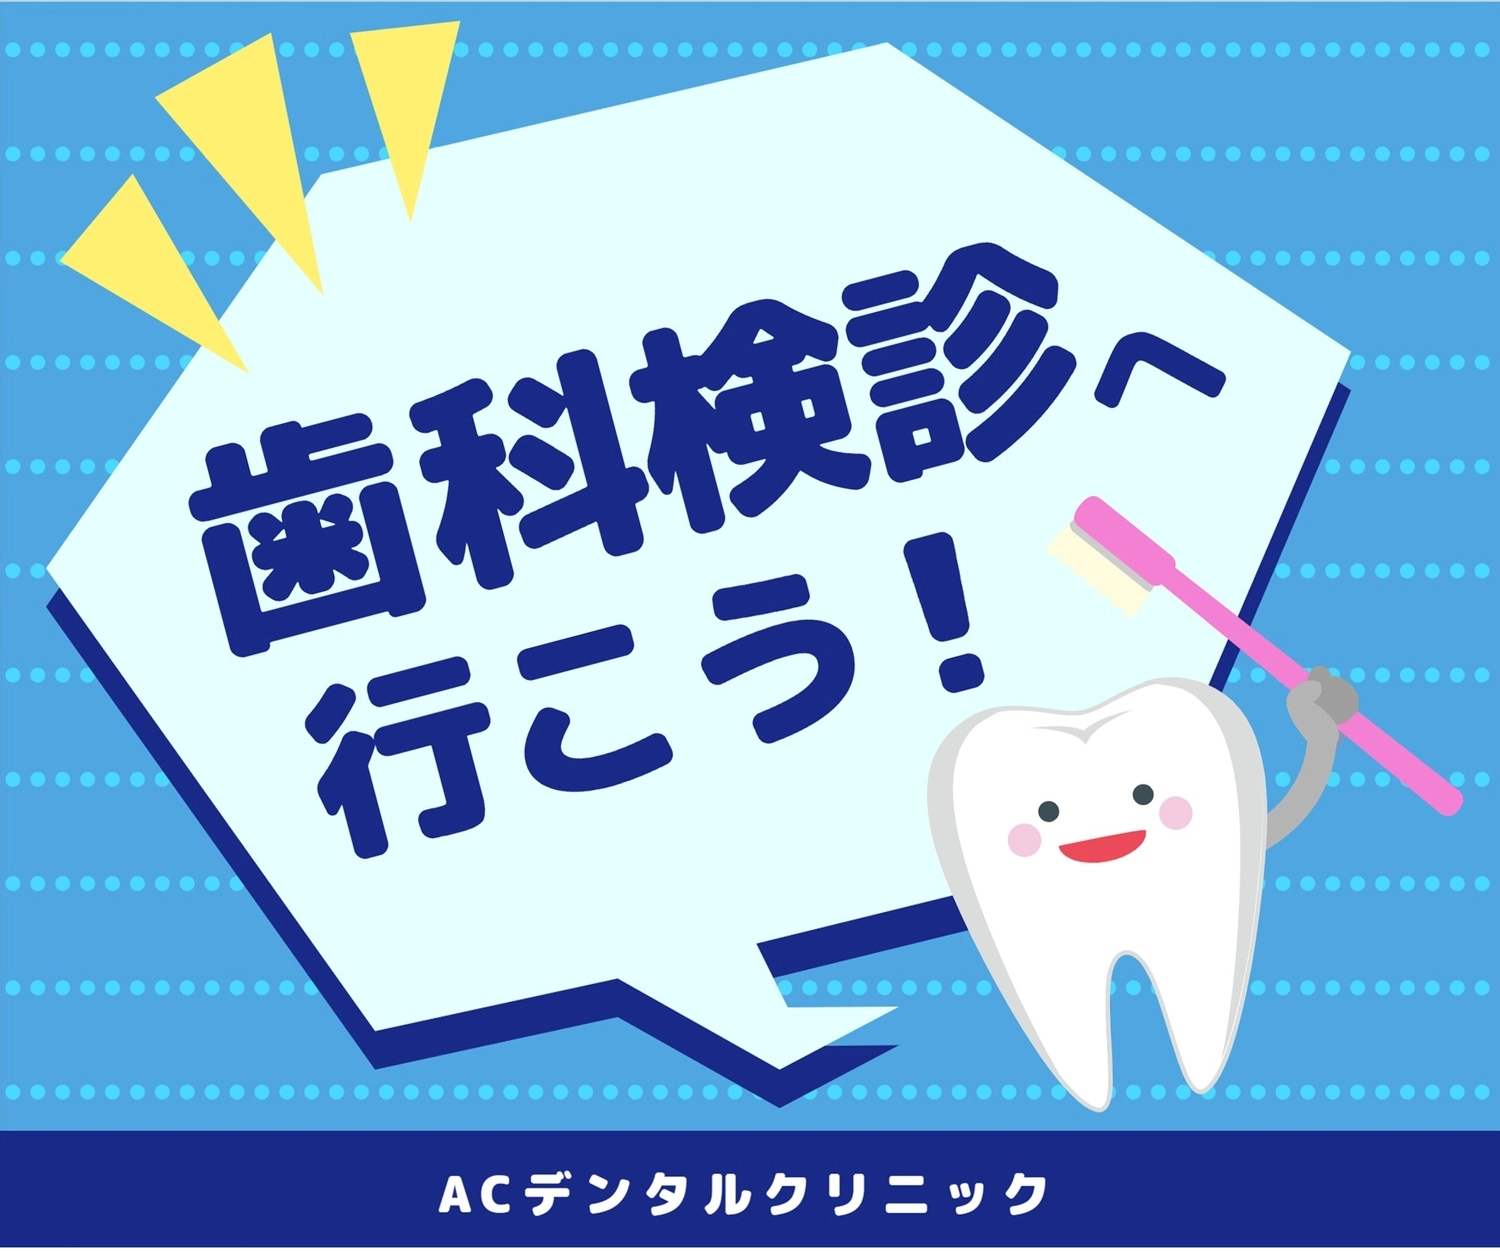 歯科検診へ行こう！（歯ブラシ持った歯イラスト）, toothbrush, background, light blue, Banner template